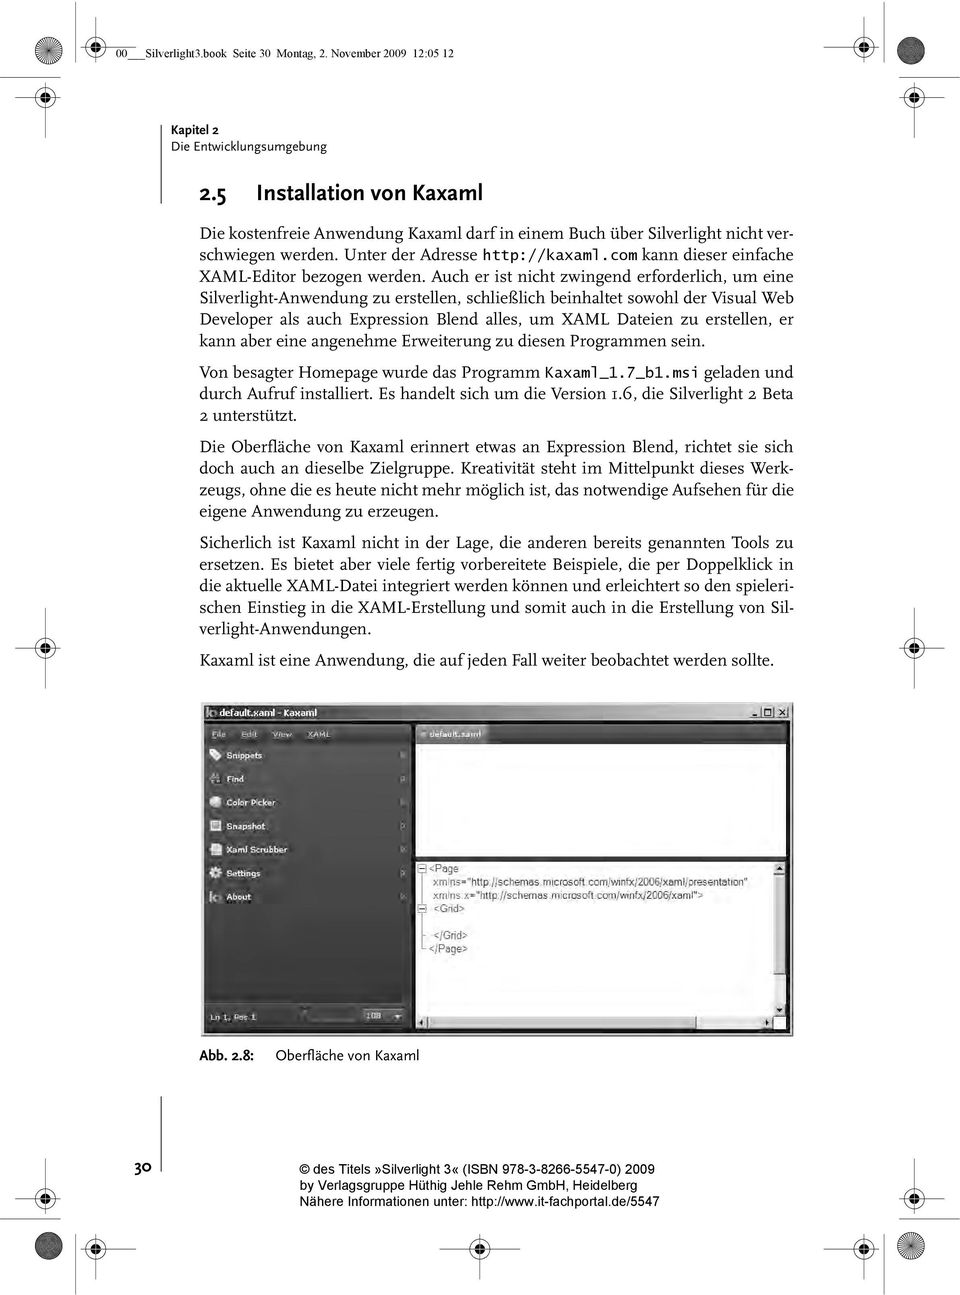 com kann dieser einfache XAML-Editor bezogen werden.